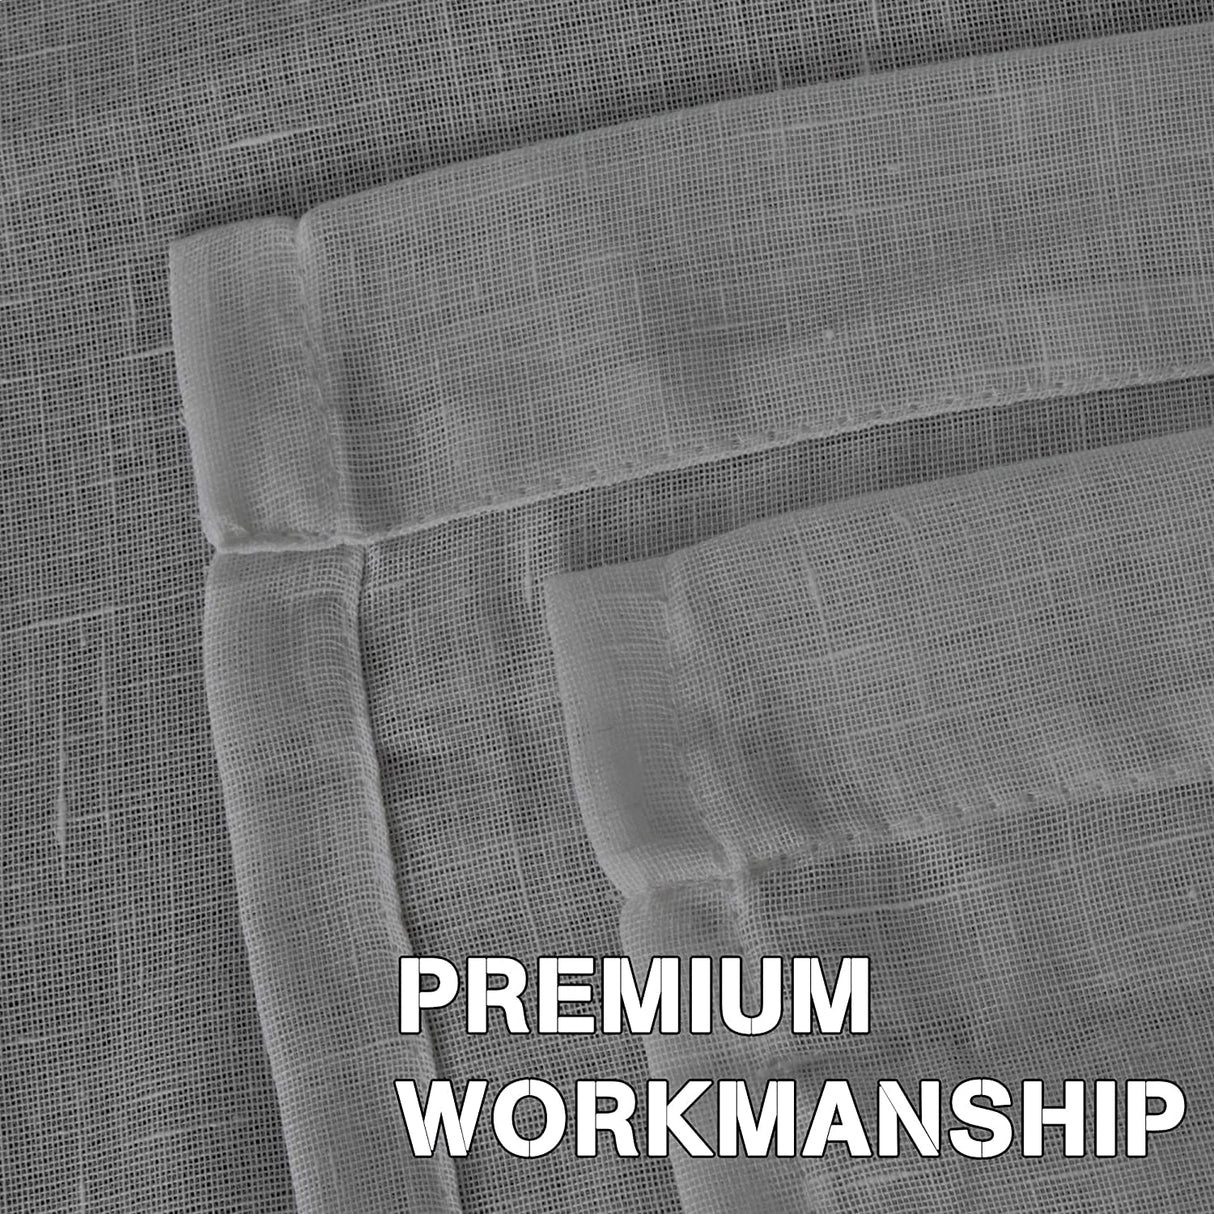 PrimeBeau Faux Linen Sheer Curtains Grommet Drapes 37 Series, Set of 2 Panels